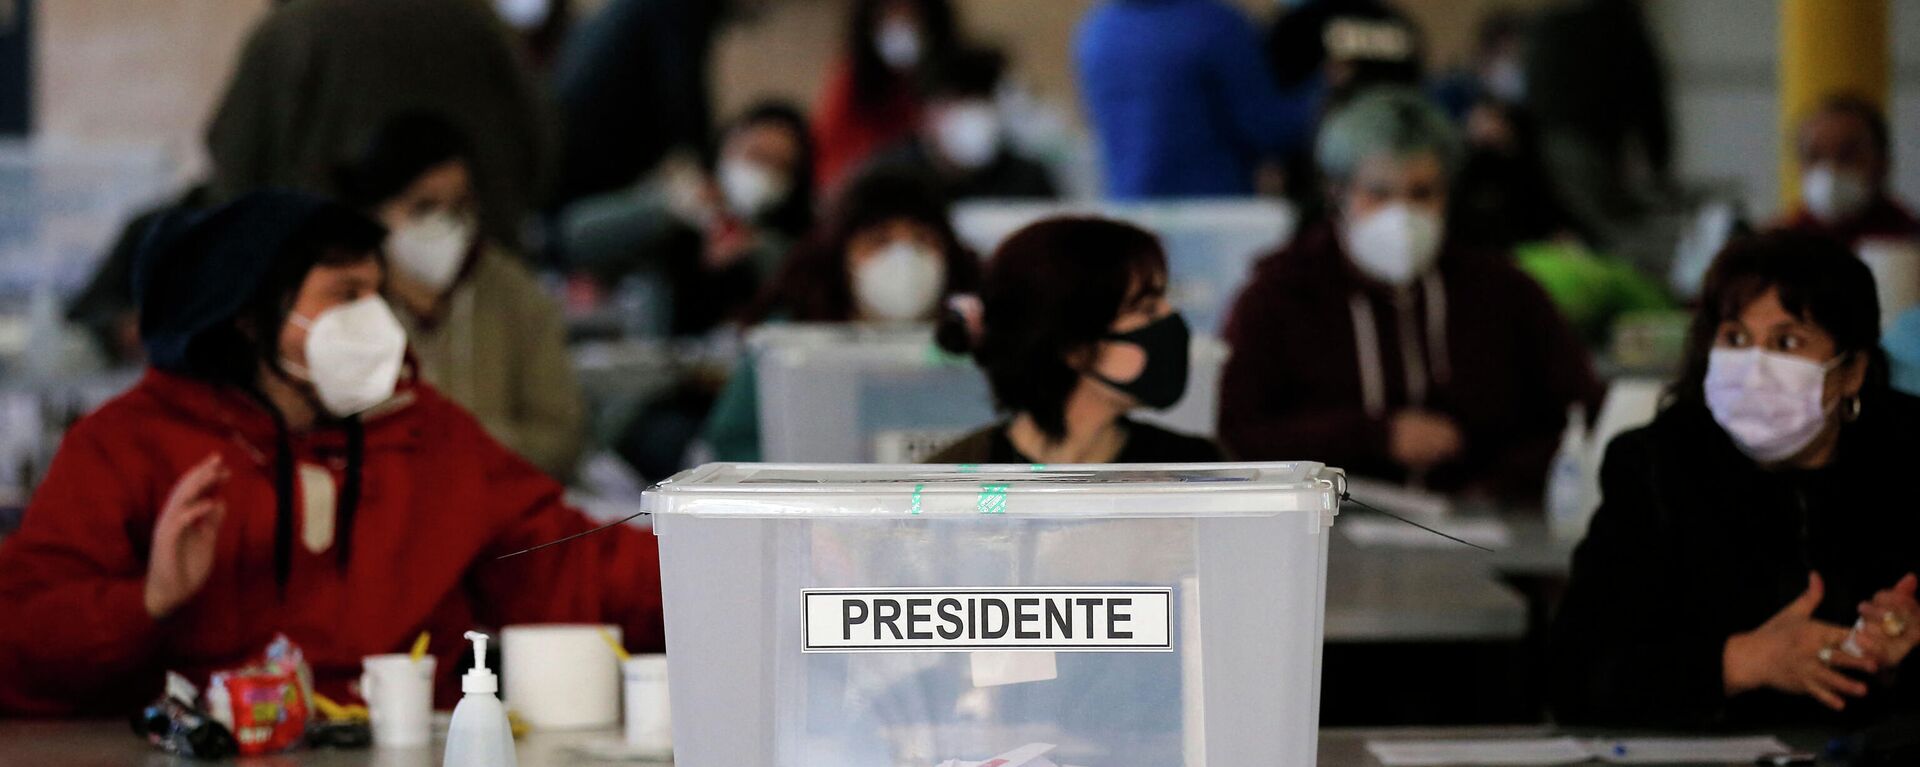 Elecciones primarias en Chile - Sputnik Mundo, 1920, 21.11.2021